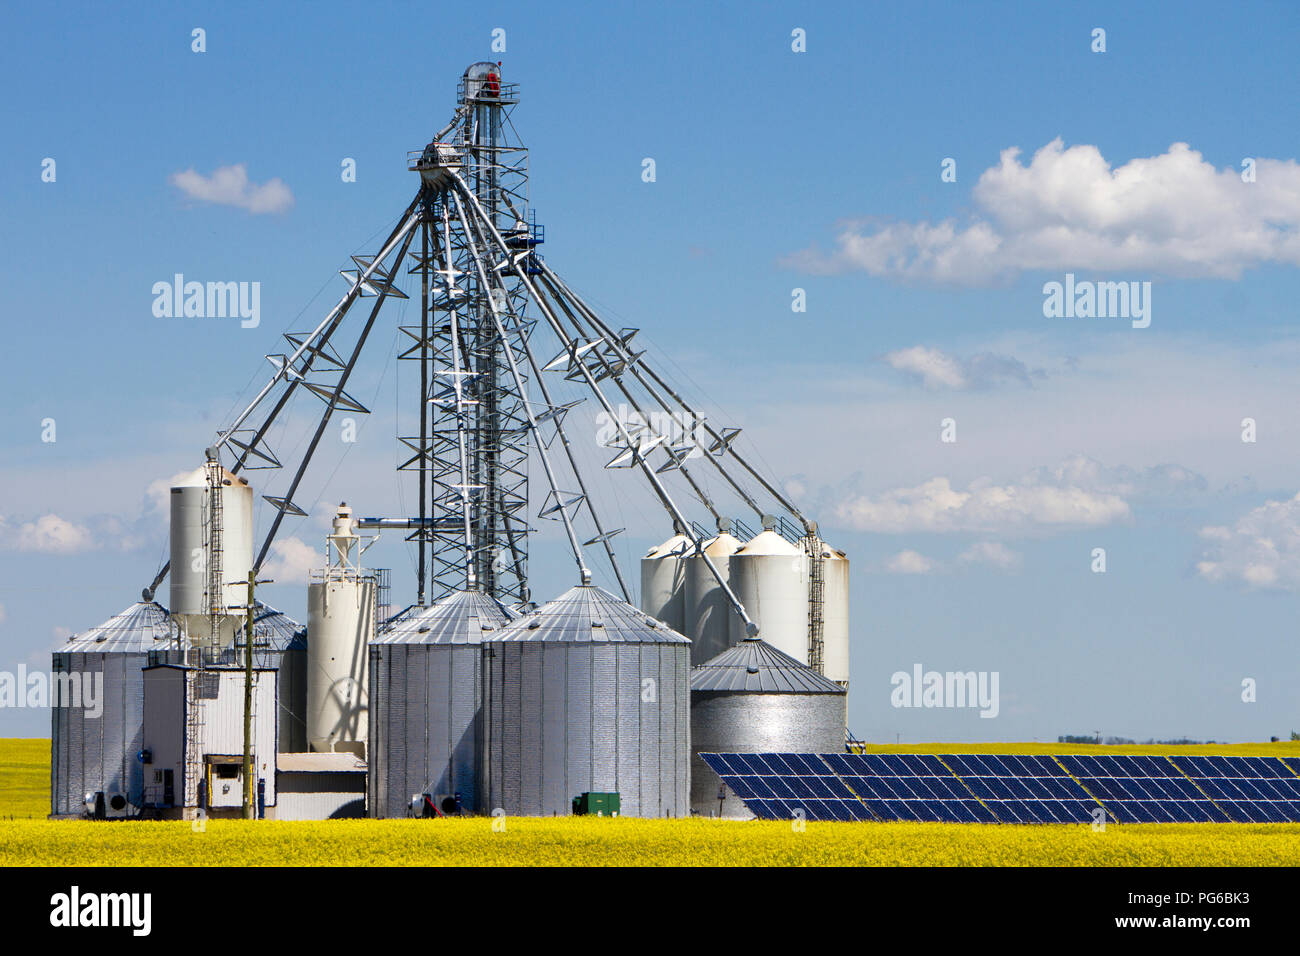 Un acciaio silos serbatoio di stoccaggio con pannello solare in un giallo canola field in fiore in Alberta, Canada. Foto Stock